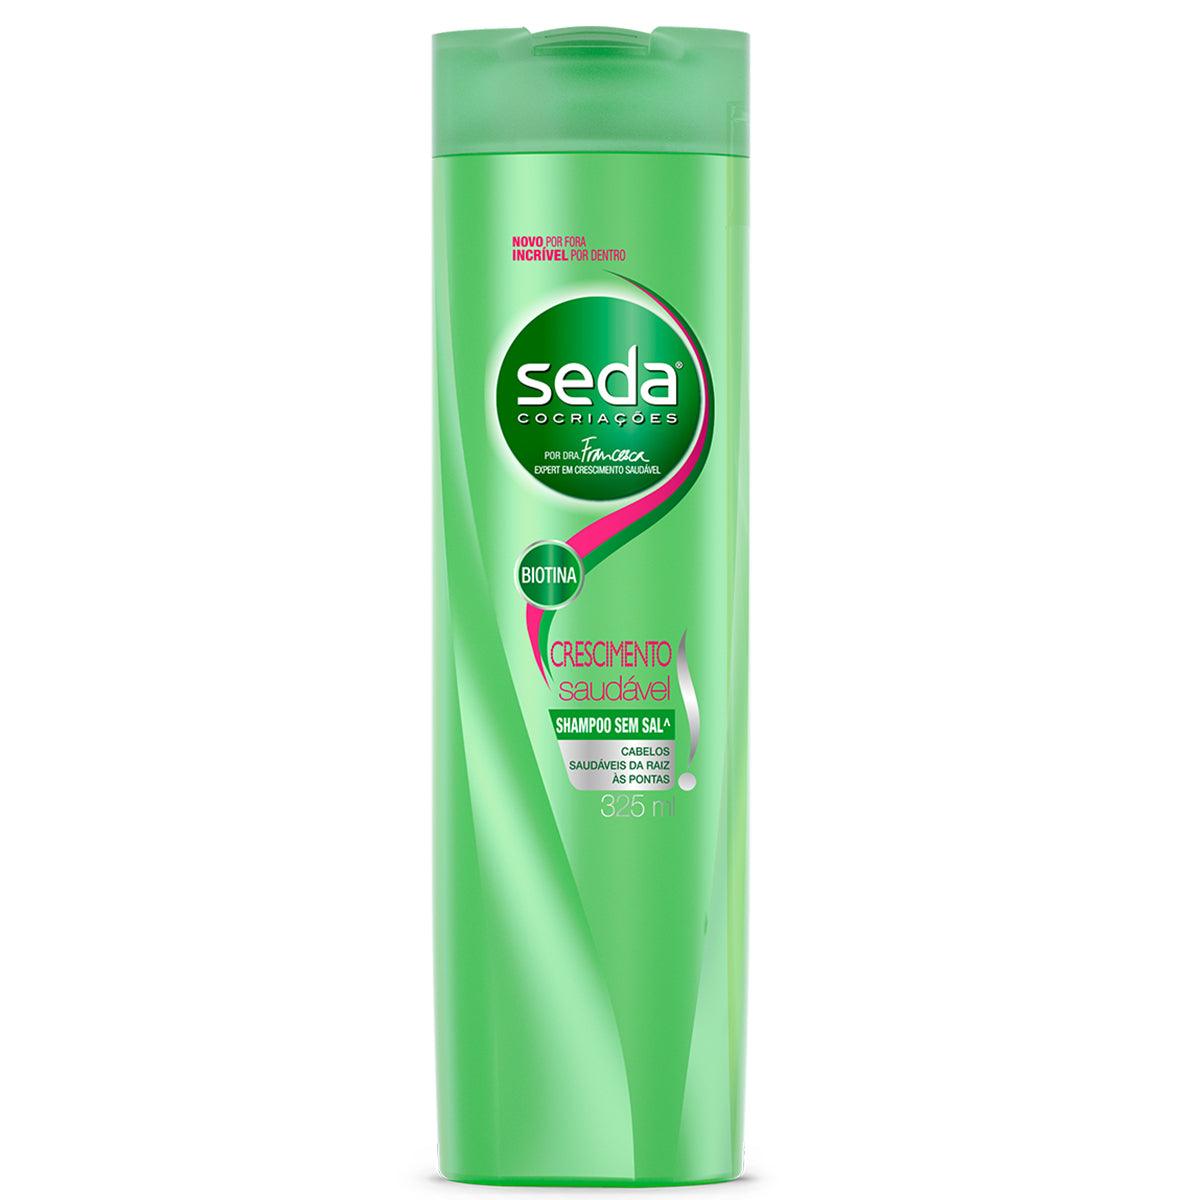 Seda Shampoo Cresc.Saudavel 10.99floz